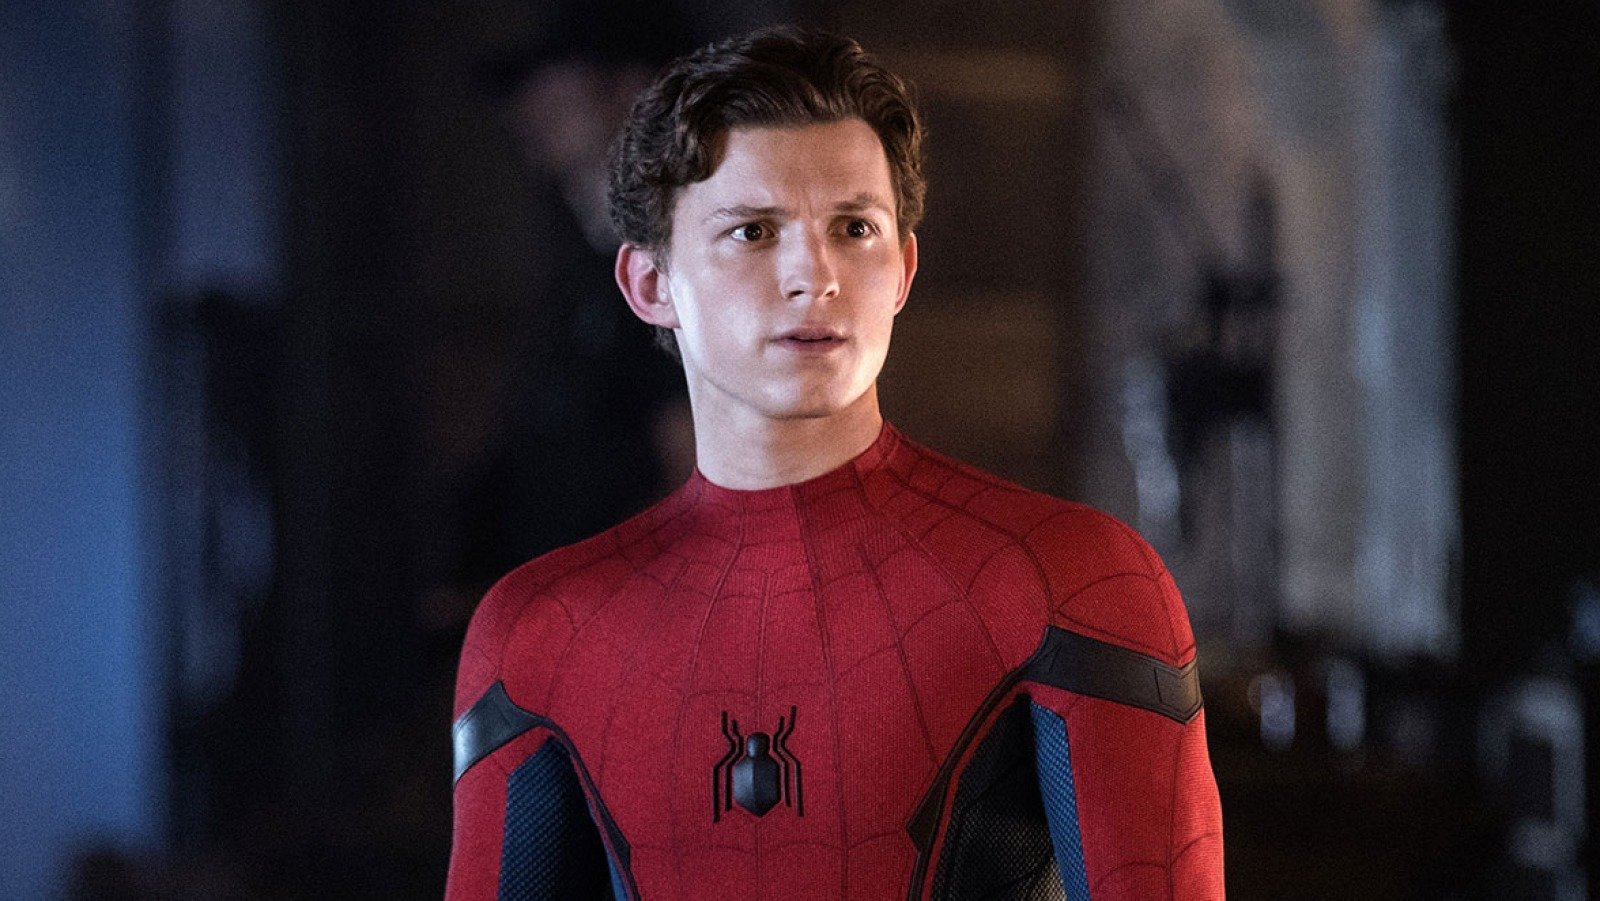 Novo filme do Homem-Aranha marca 3ª maior estreia nos EUA todos os tempos